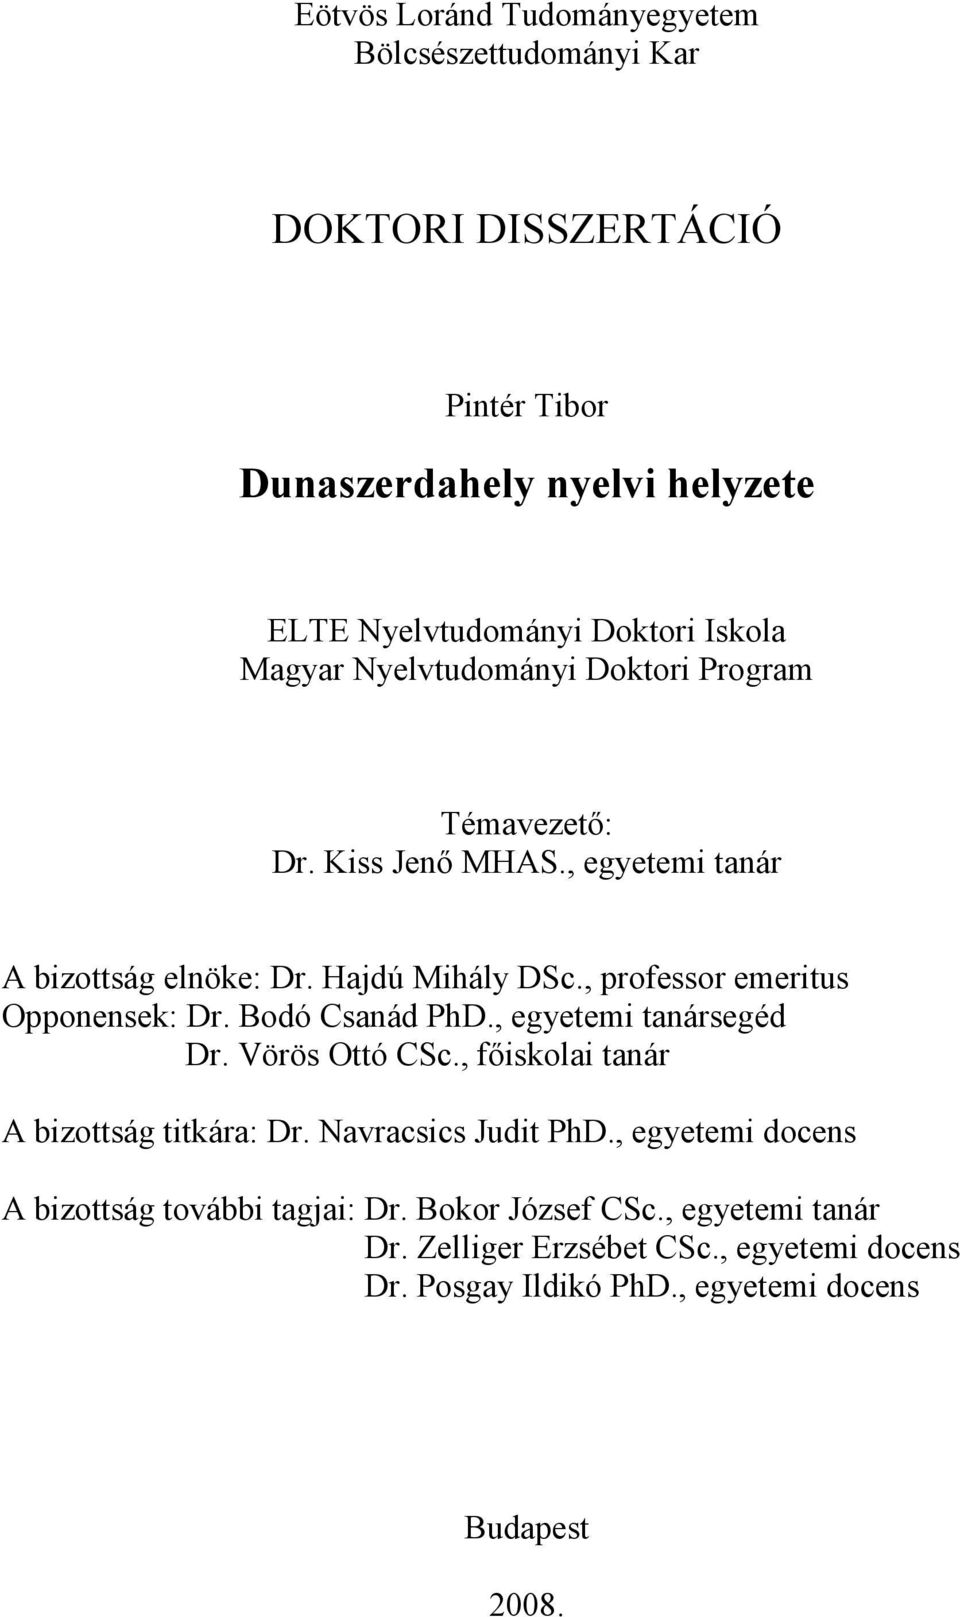 DOKTORI DISSZERTÁCIÓ. Dunaszerdahely nyelvi helyzete - PDF Ingyenes letöltés